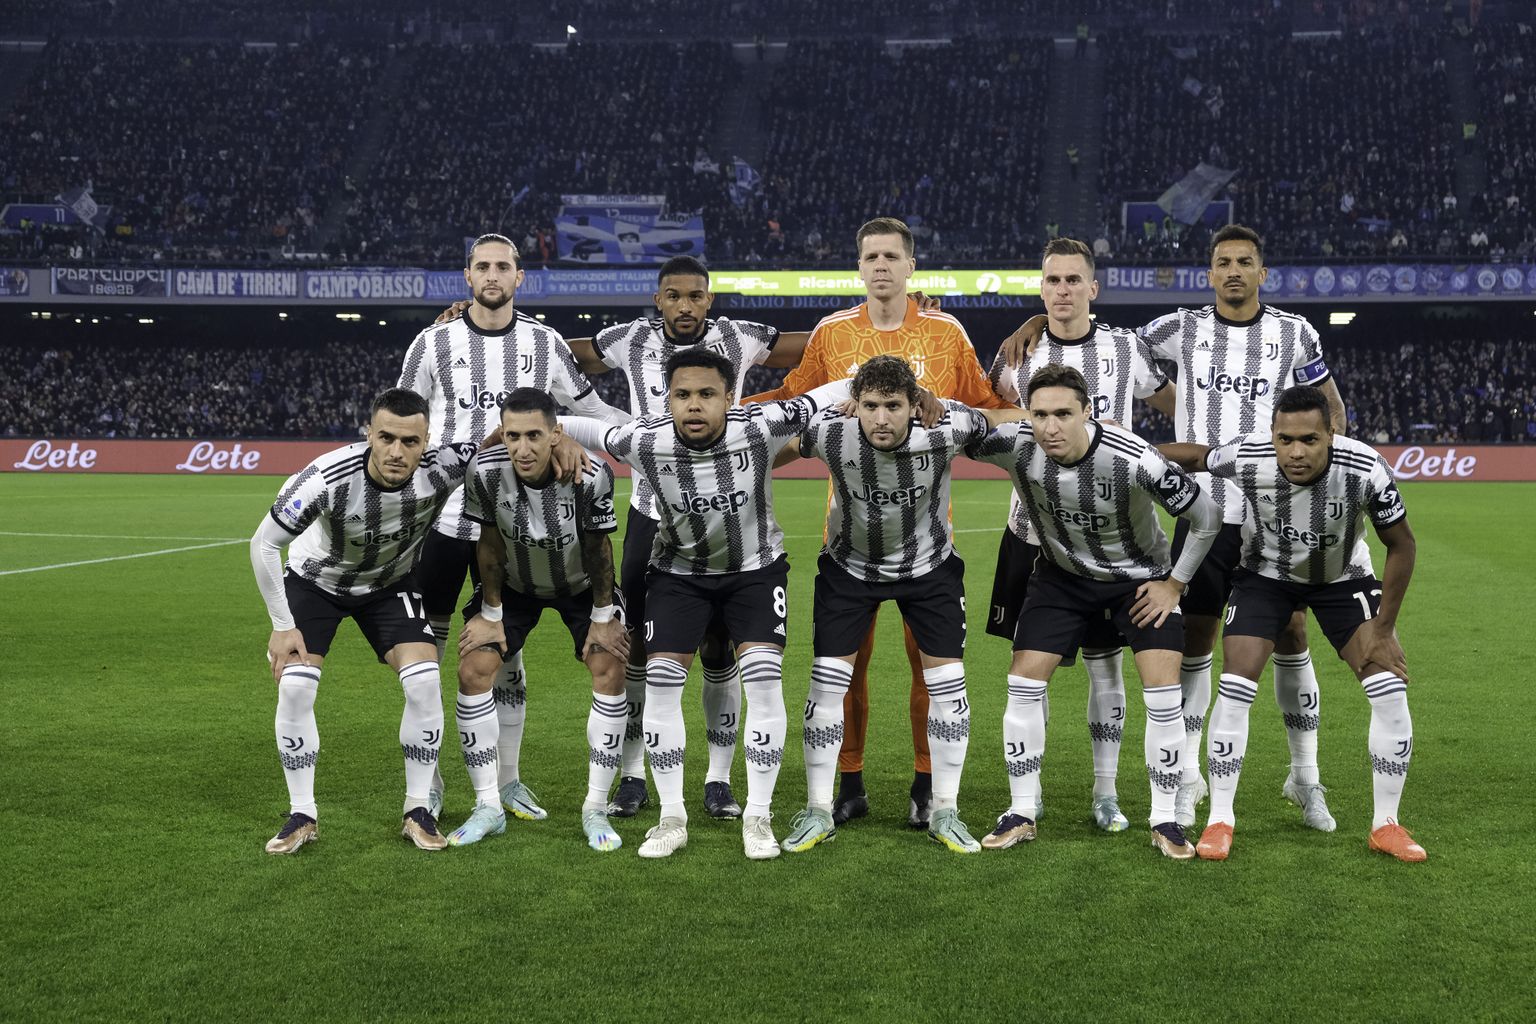 Torino Juventuse mängijad. Pilt on illustratiivne.